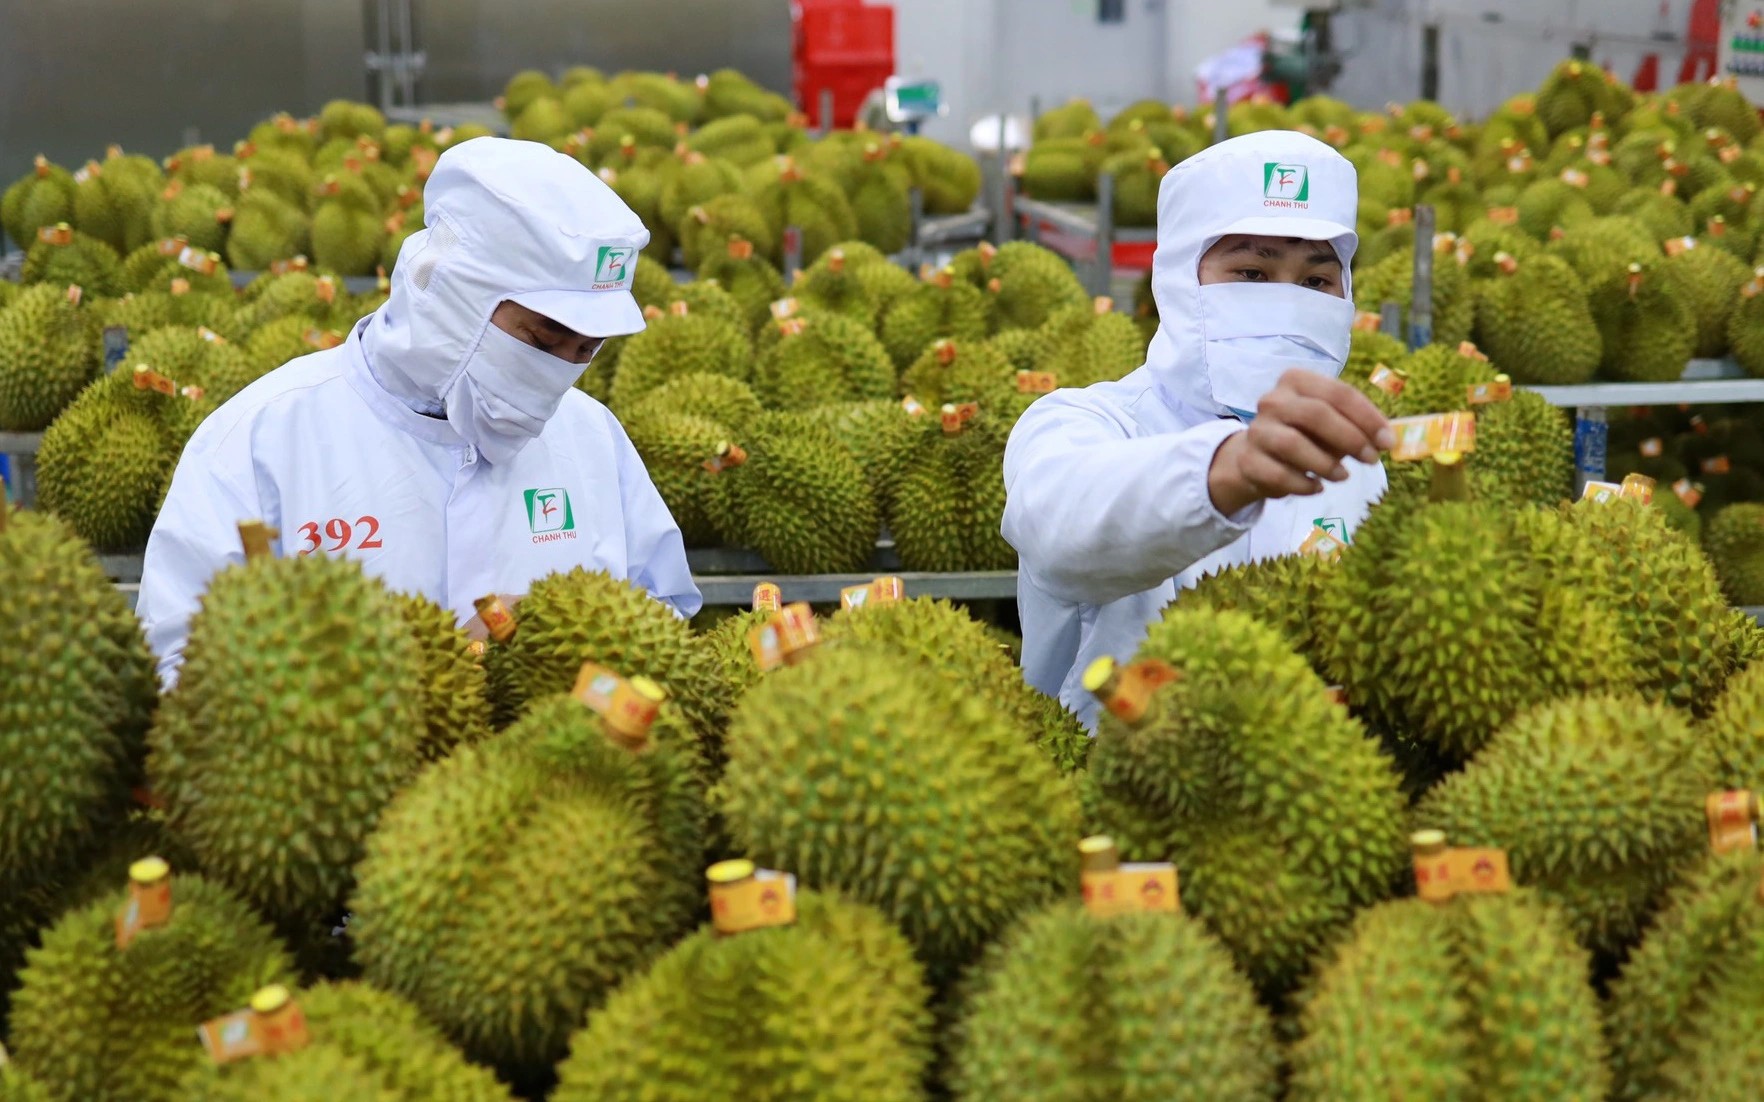 Xuất khẩu rau quả "bùng nổ" khi mang về 1,8 tỷ USD, chuyên gia nói Trung Quốc vẫn "khát" sầu riêng- Ảnh 1.